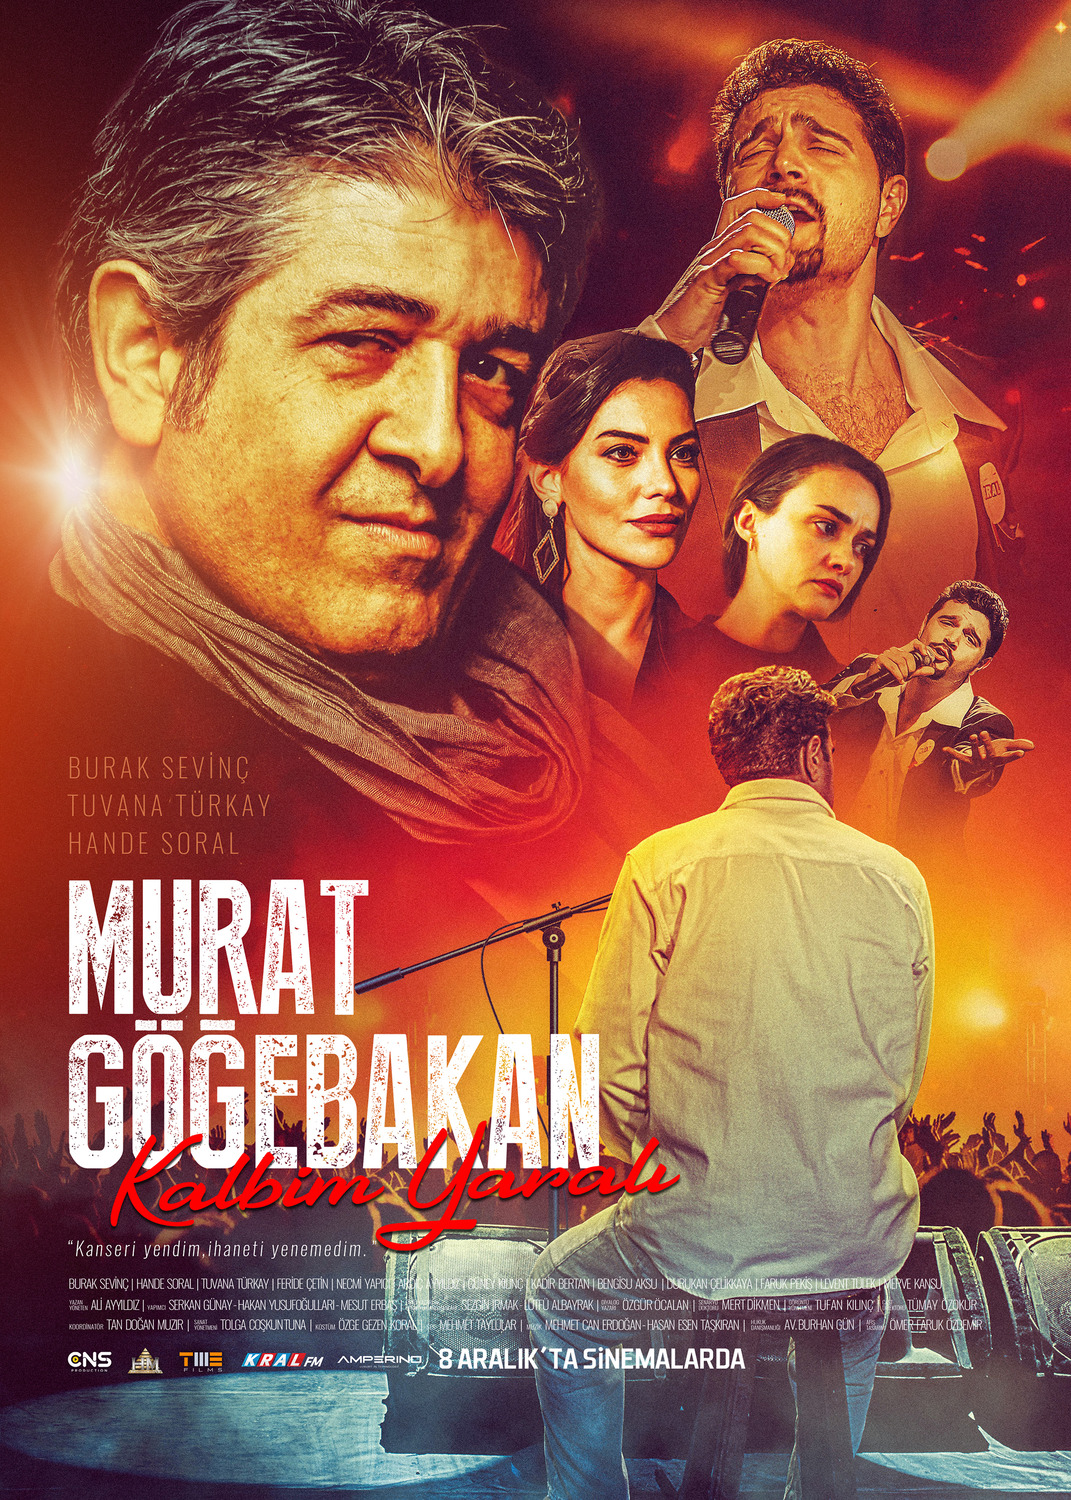 Extra Large Movie Poster Image for Murat Gögebakan: Kalbim Yarali (#14 of 14)